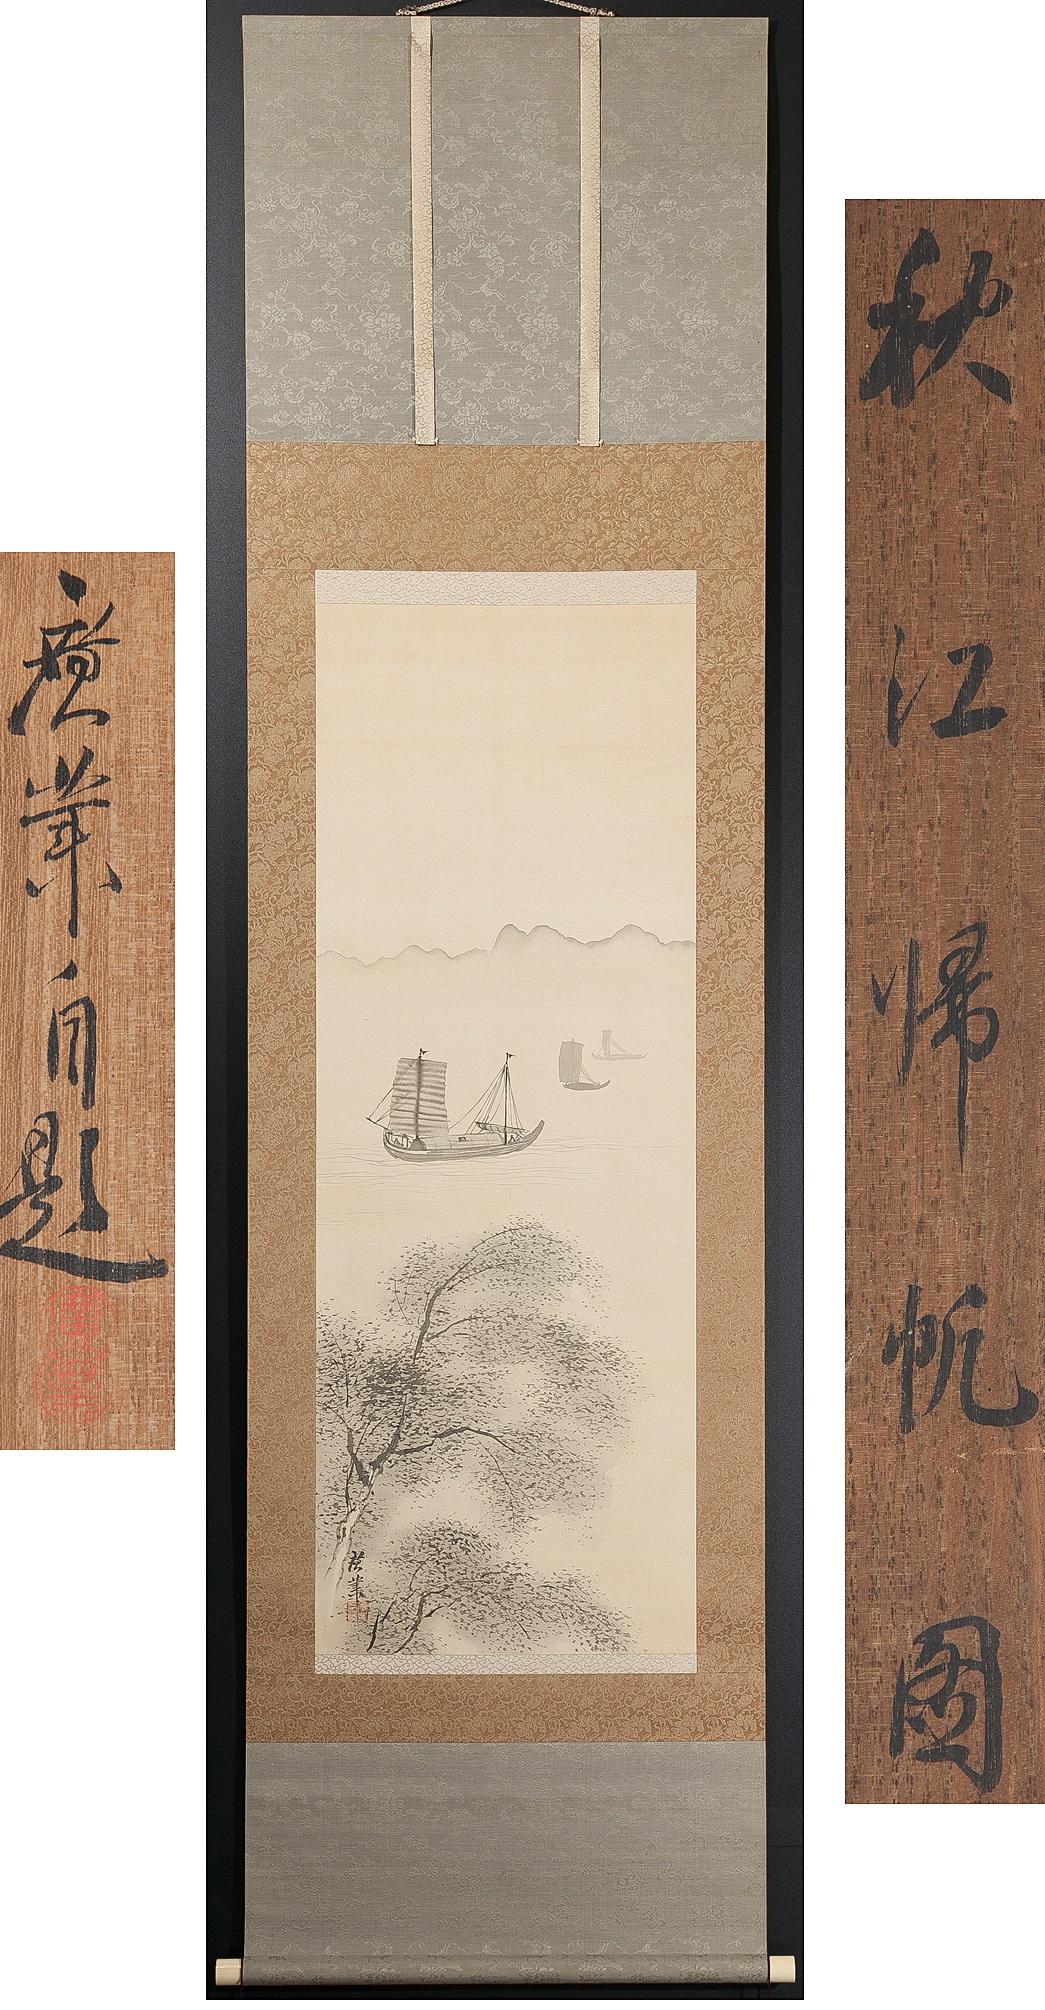 Un fabuleux paysage de Kogyo Terasaki
1866-1919
Peintre japonais. Production de la préfecture d'Akita. Le personnage est Tokusato, Soyama-Agaryunoki, la belle poésie Yamabito, etc.etc. à un autre numéro
Condit
Condit : Quelques taches mineures.